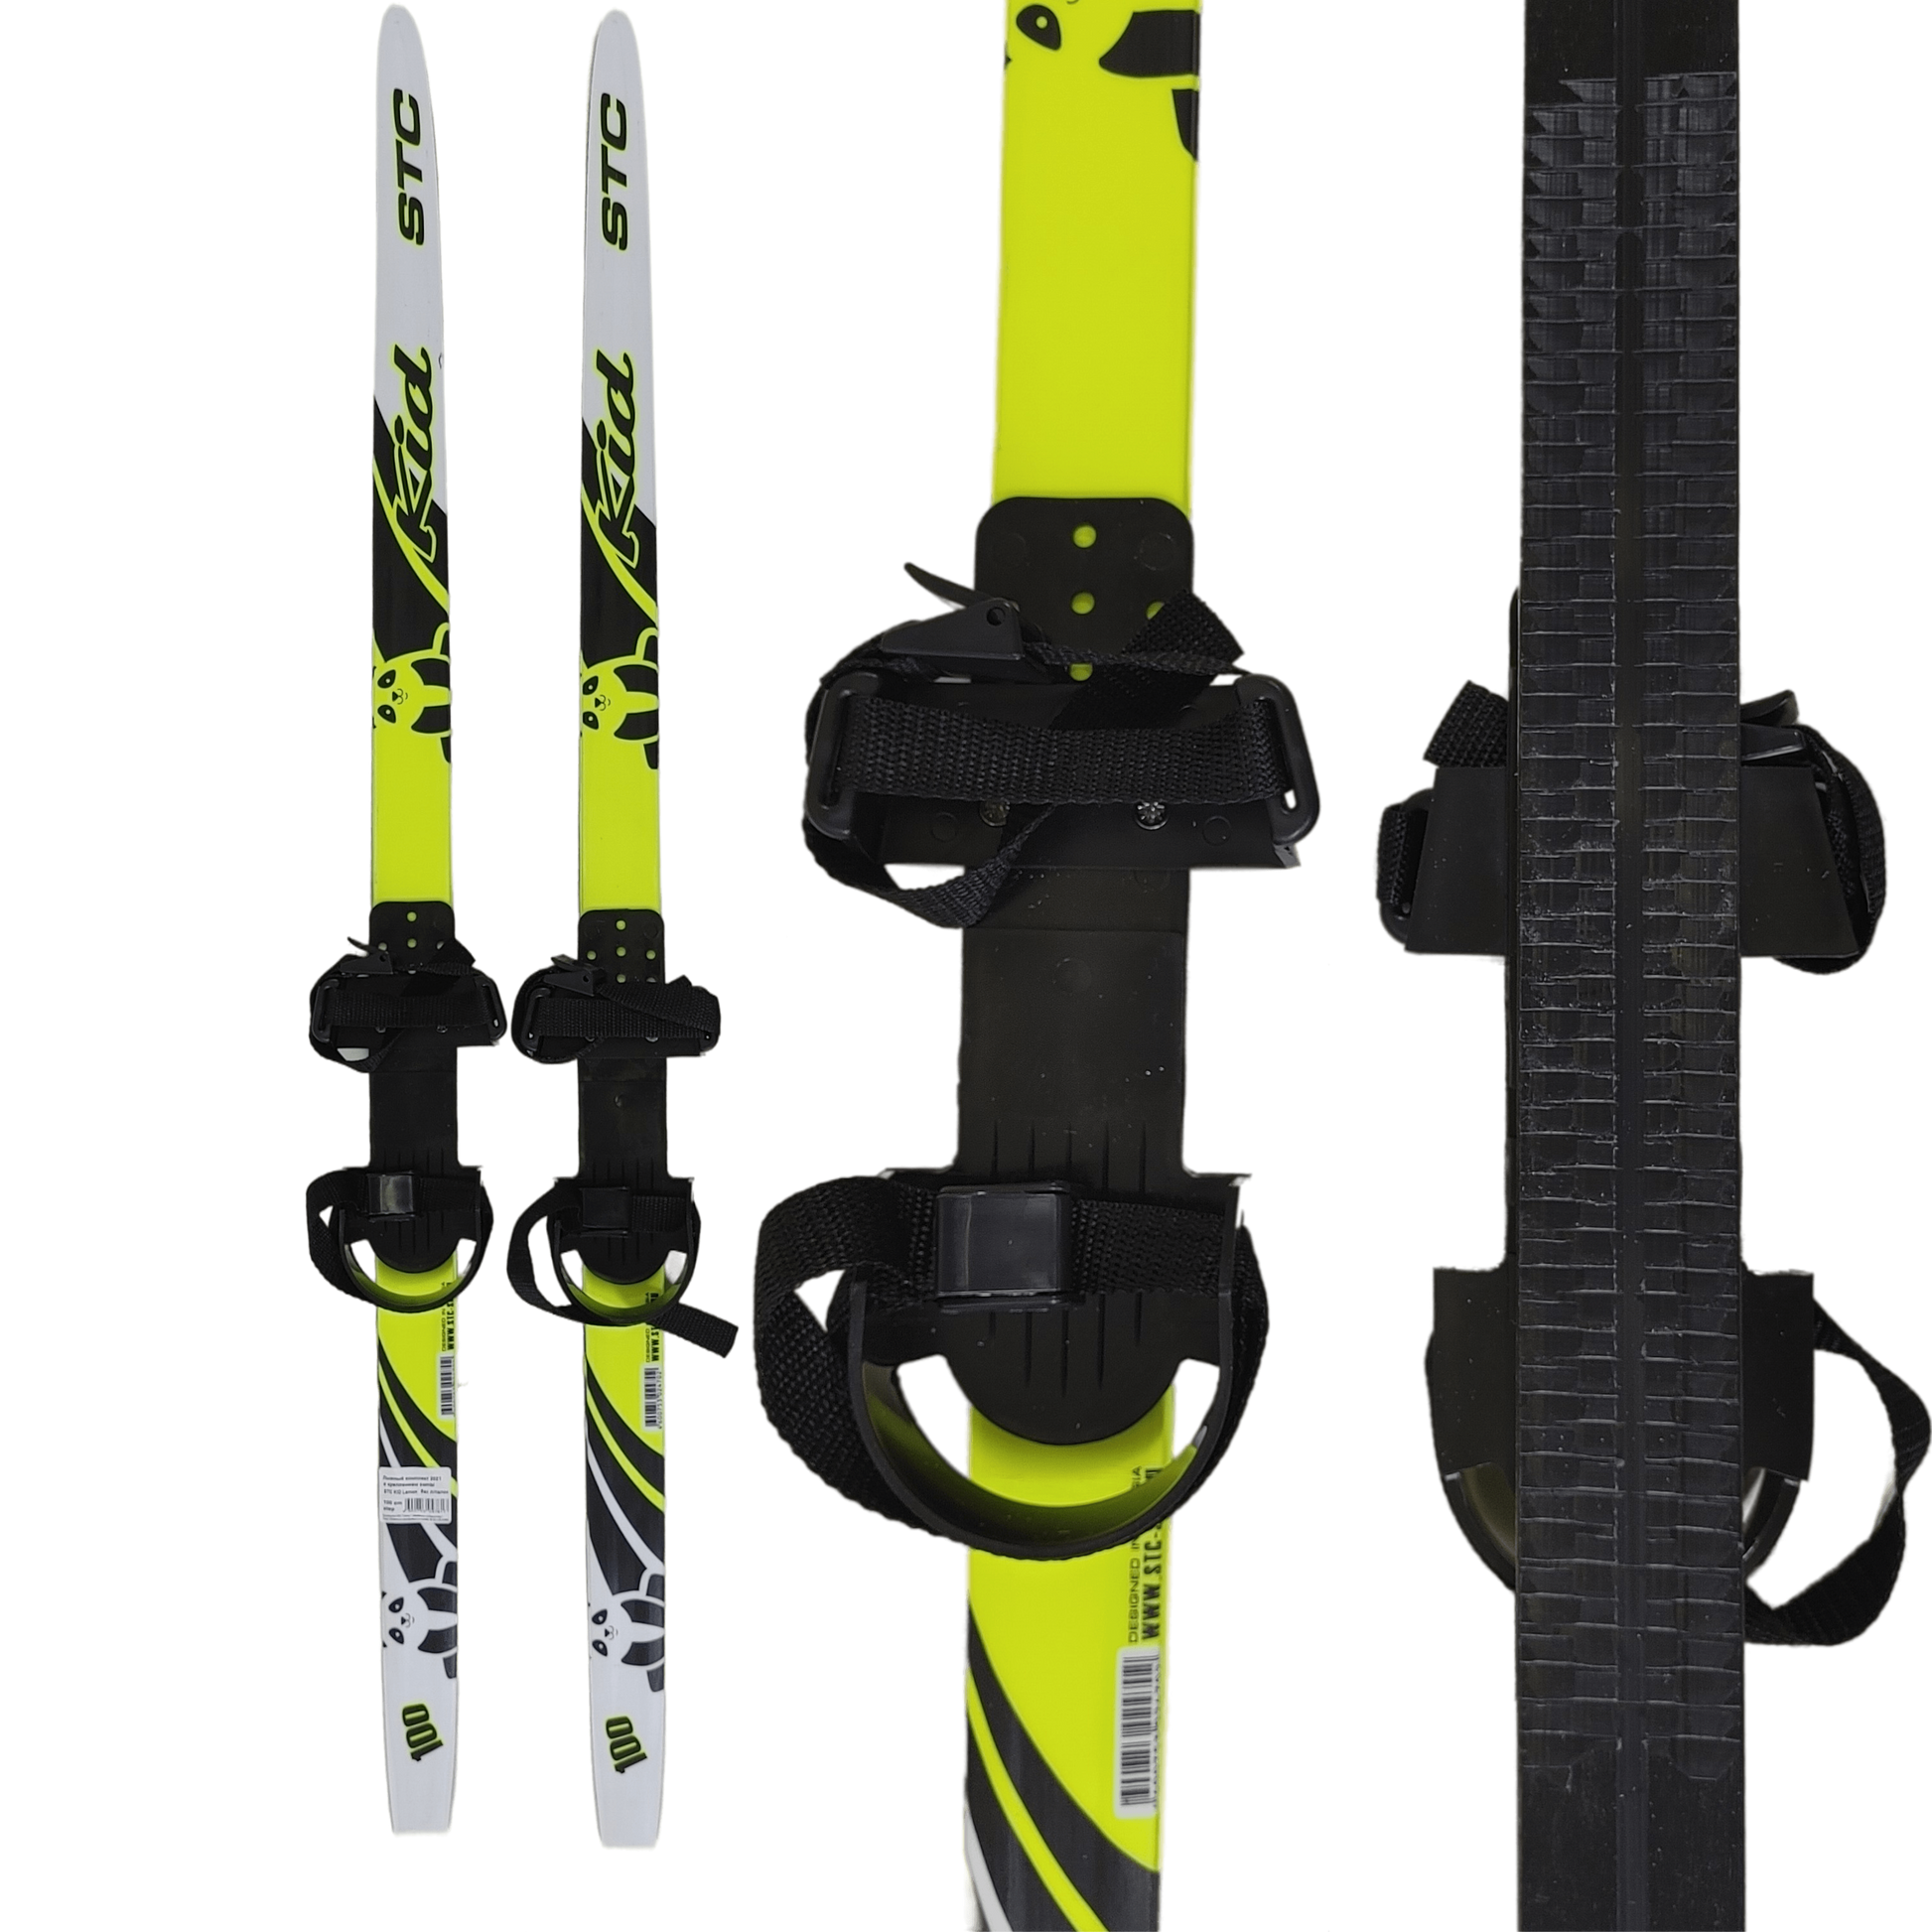 STC Lemon Fishscale Ski Set for Kids with Bindings|STC Lemon Fishscale Ski Set for Kids with Bindings